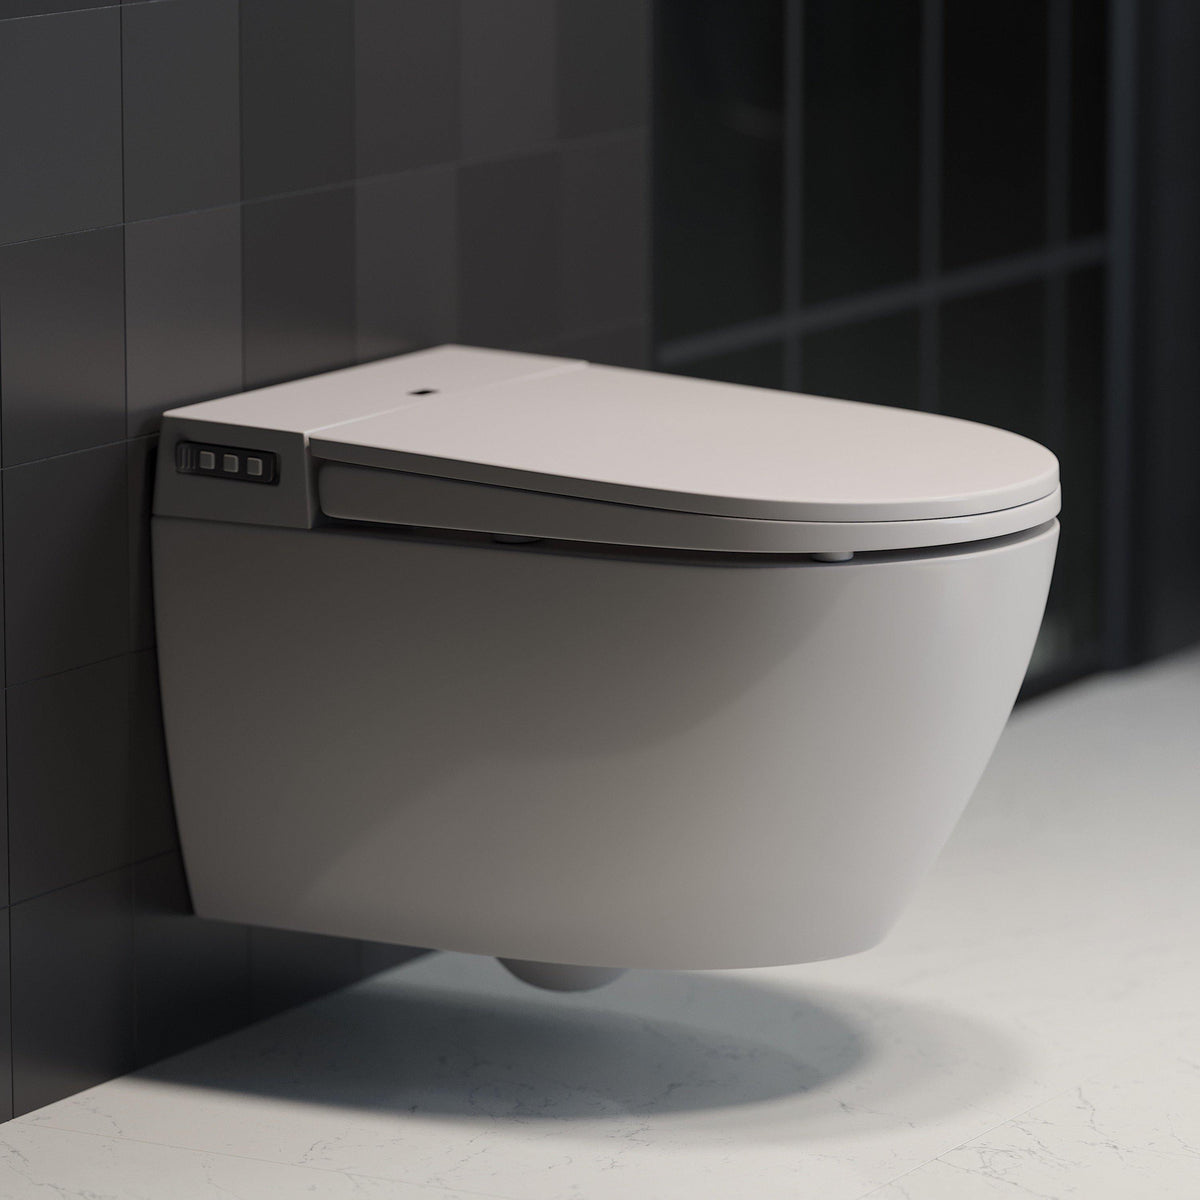 Elektrisk Duschtoalett, vägghängd-Elektriska toaletter-HomeTomato Sweden